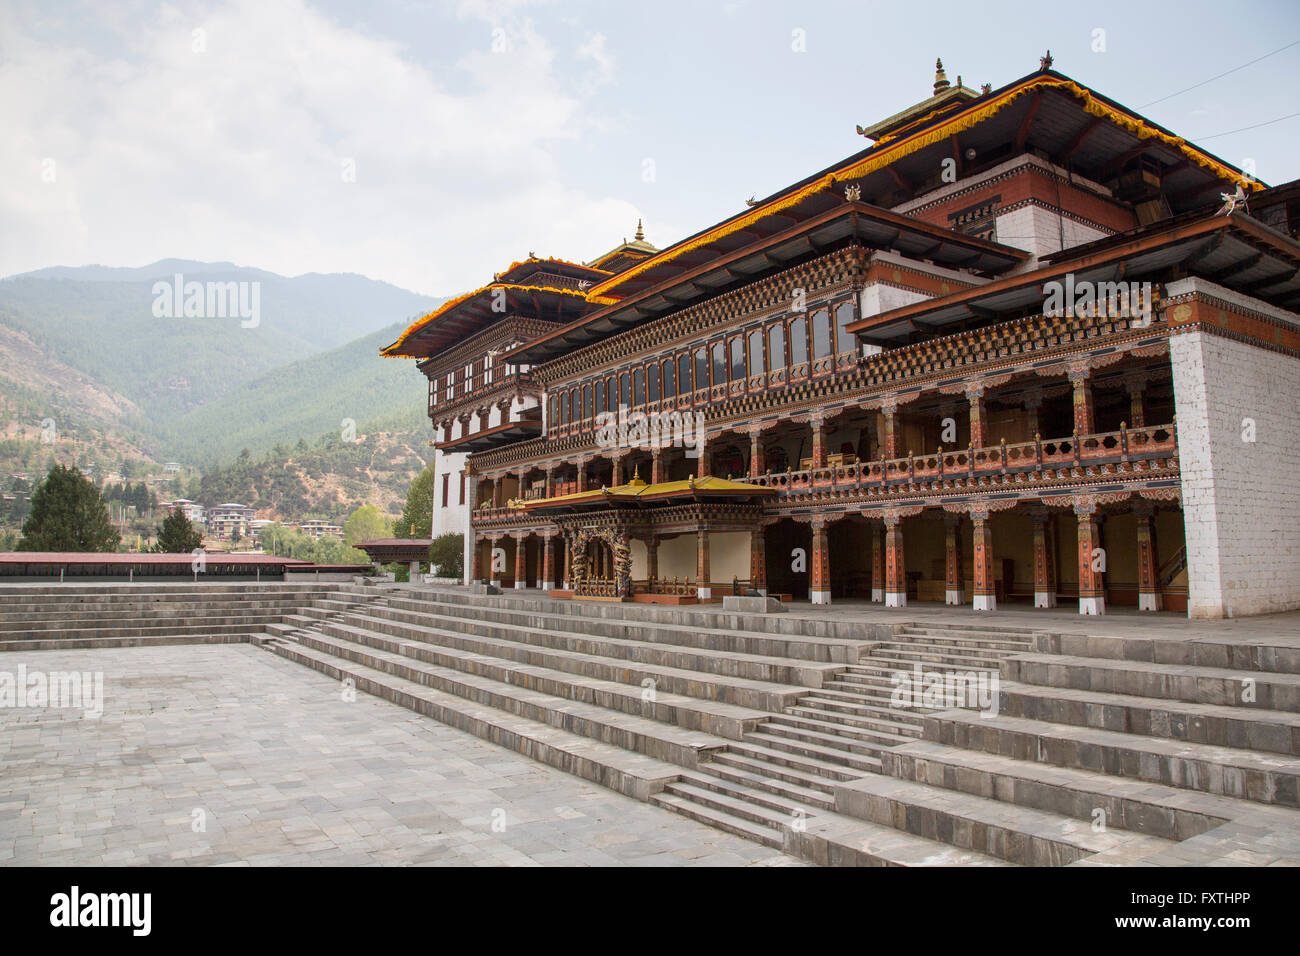 Tashichhoedzong བཀྲ ཤིས་ཆོས་རྫོང་è un monastero buddista e fortezza sul bordo settentrionale della città di Thimpu in Bhutan Foto Stock